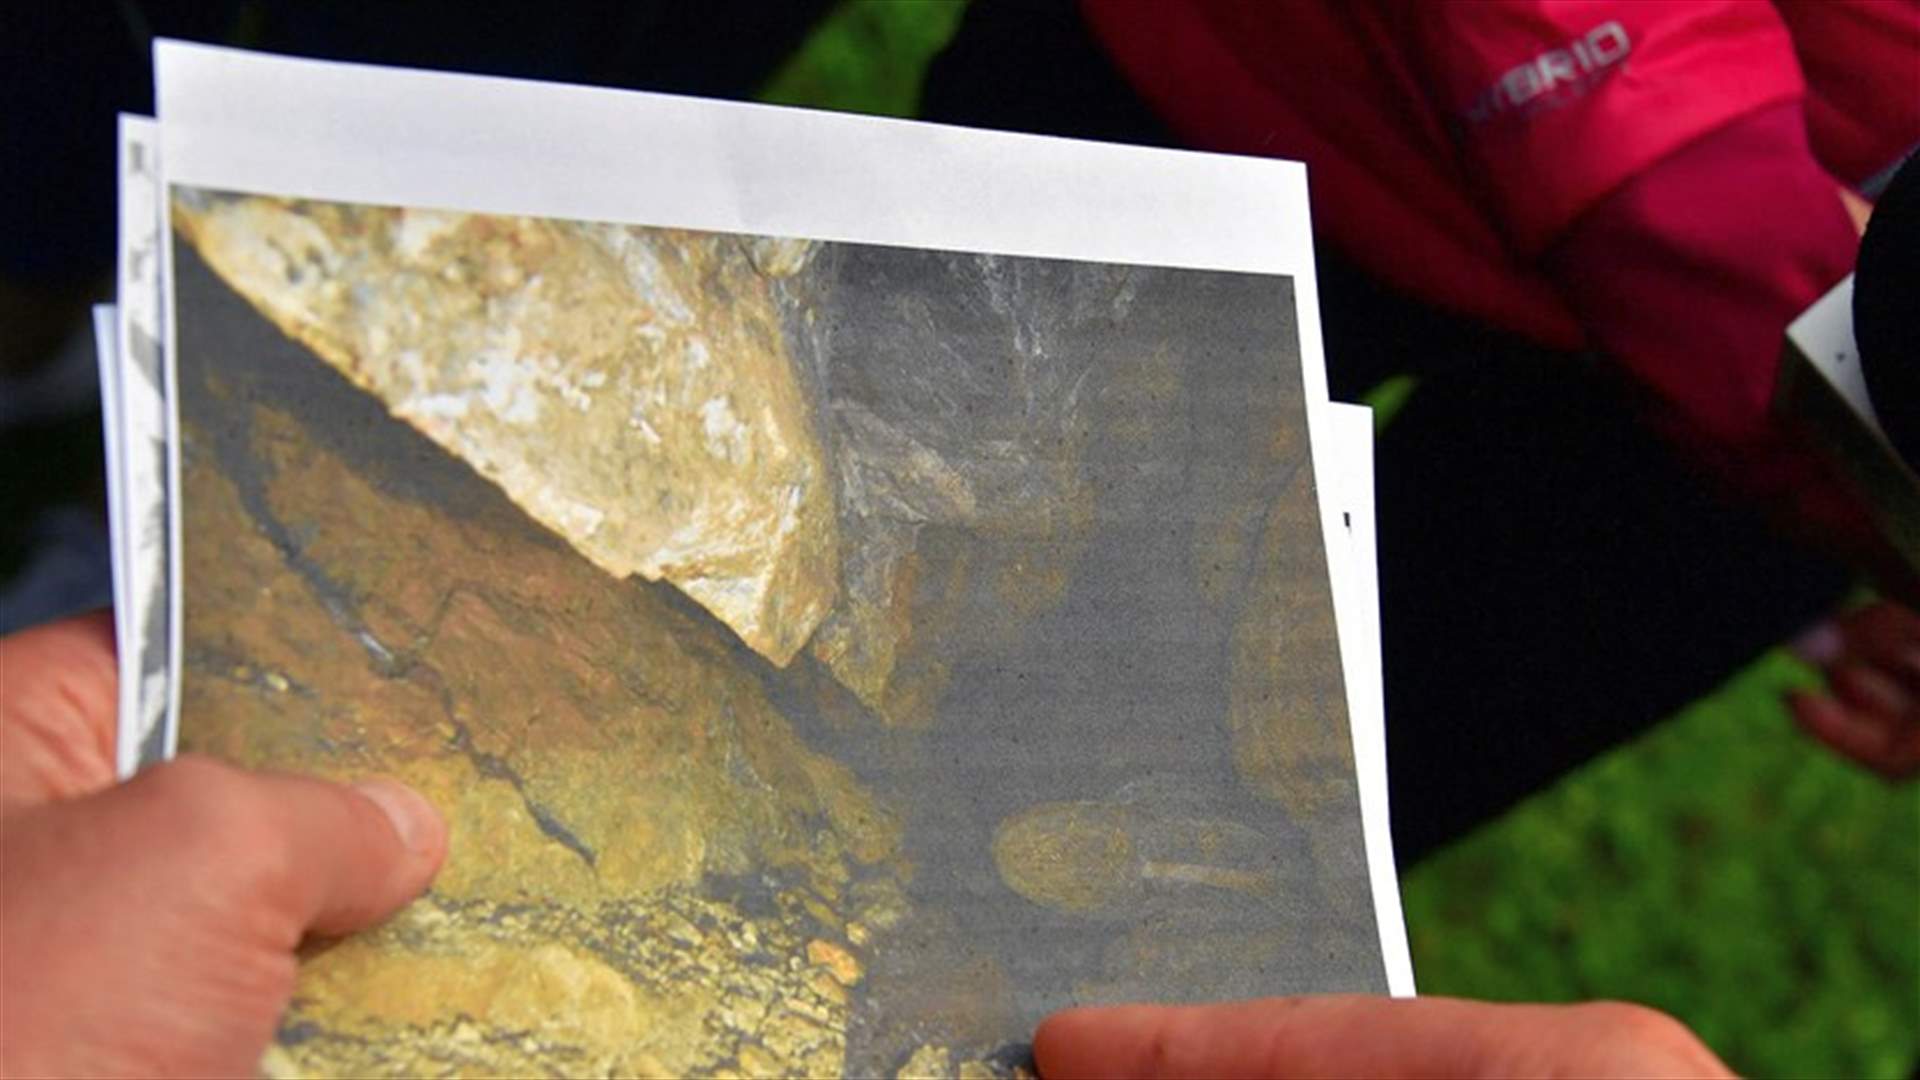 بعد نحو أسبوع... العثور على جثة مستكشف محاصر داخل كهف غمرته المياه في بولندا